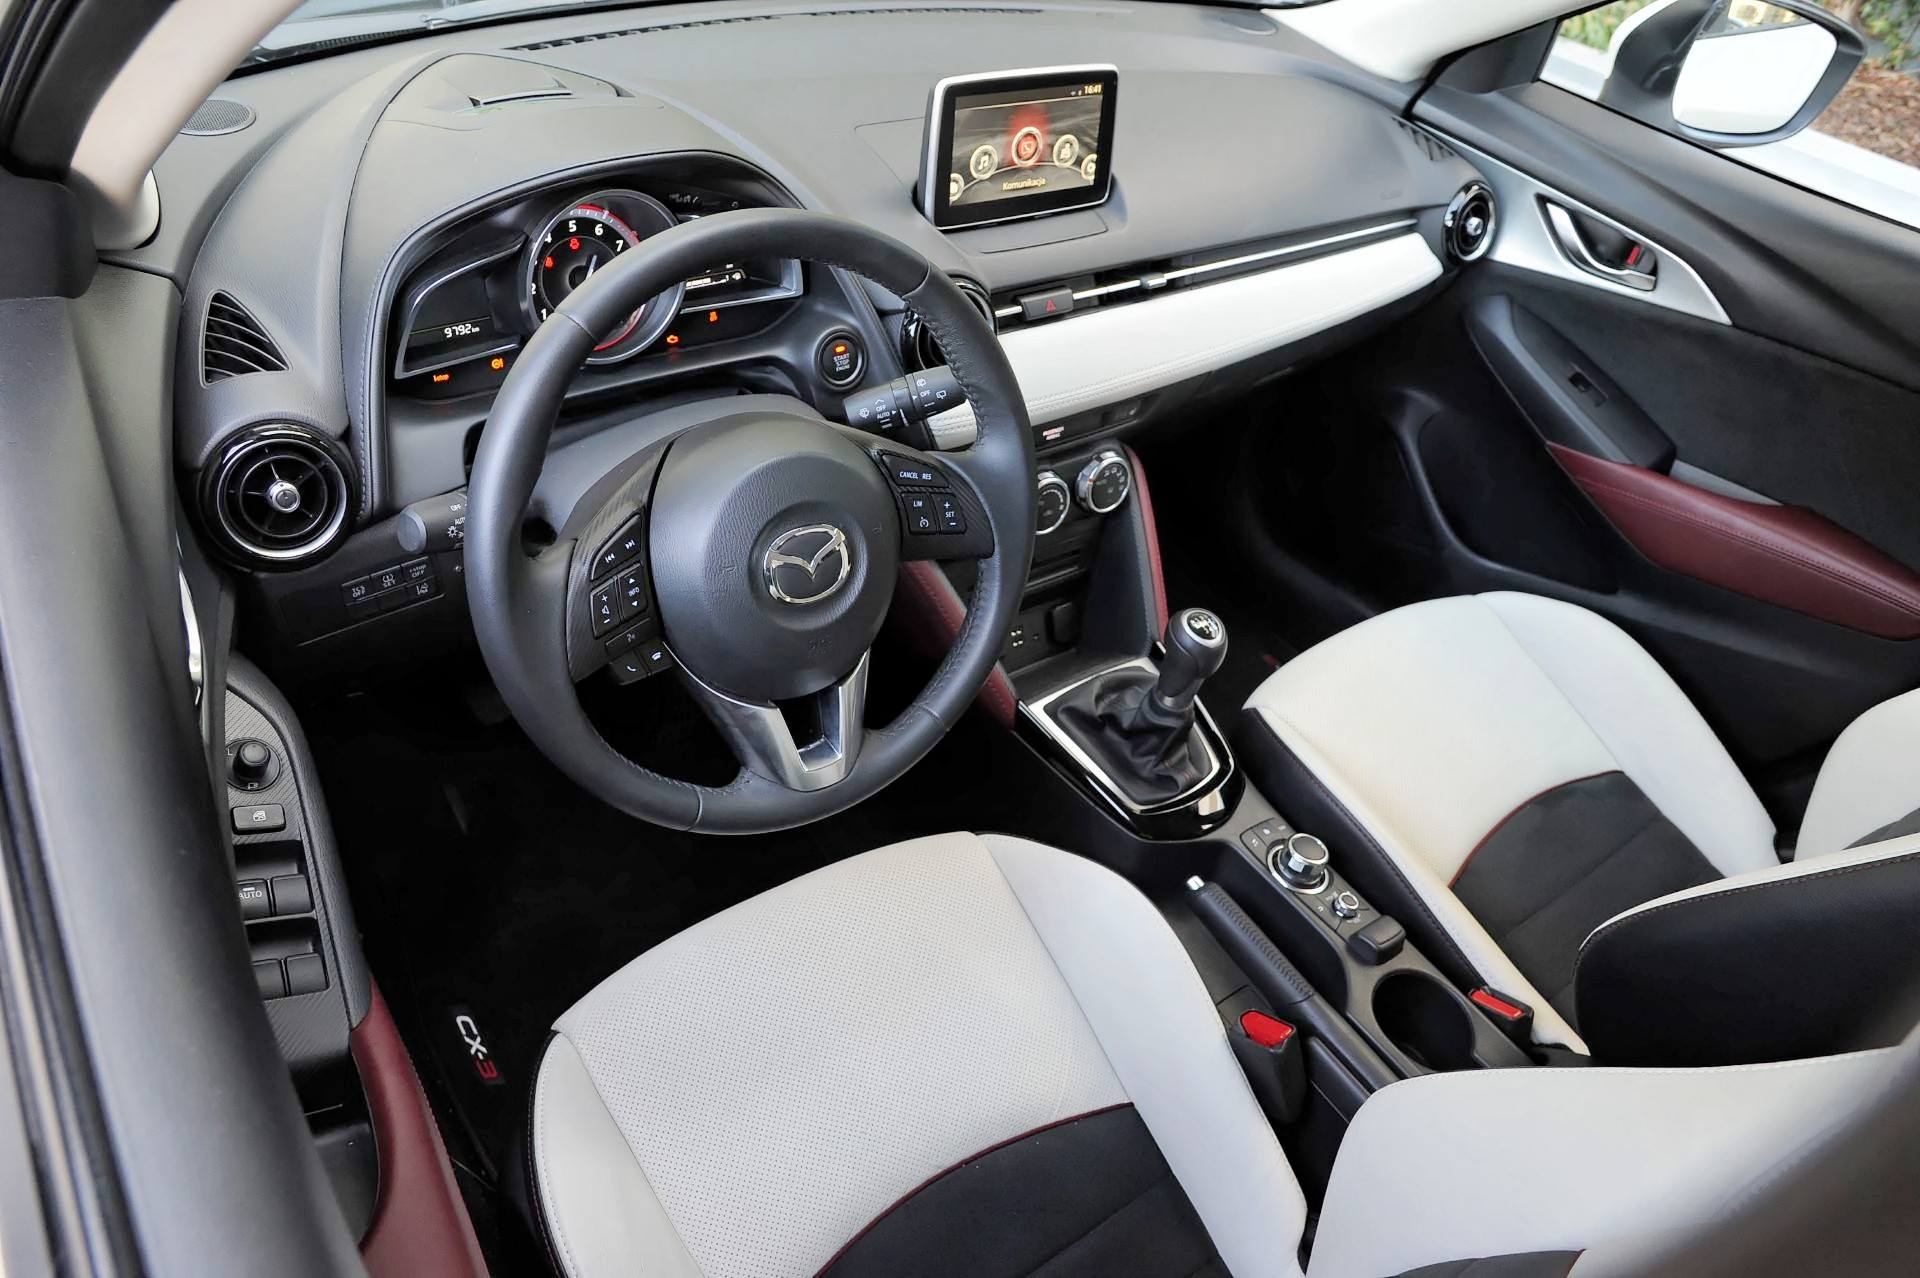 Używana Mazda CX3 (od 2015 r.) OPINIE